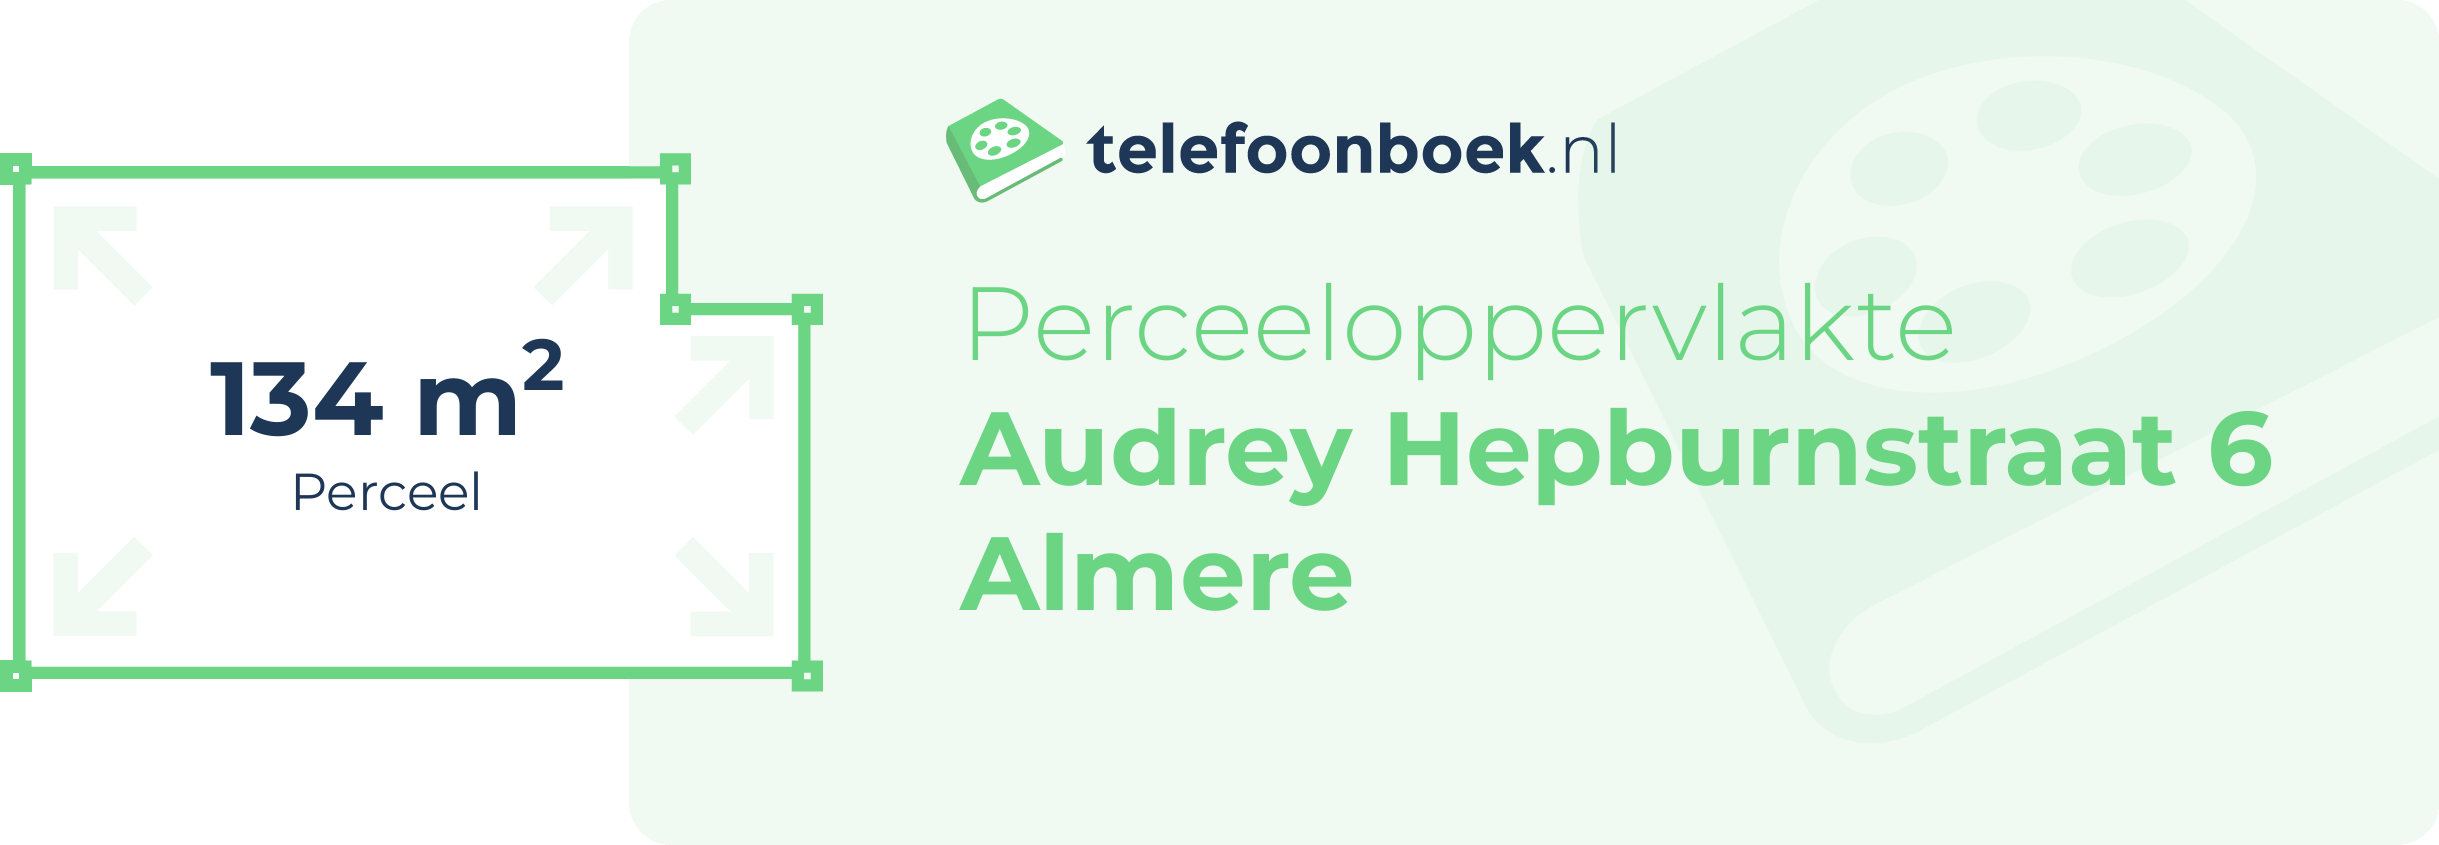 Perceeloppervlakte Audrey Hepburnstraat 6 Almere